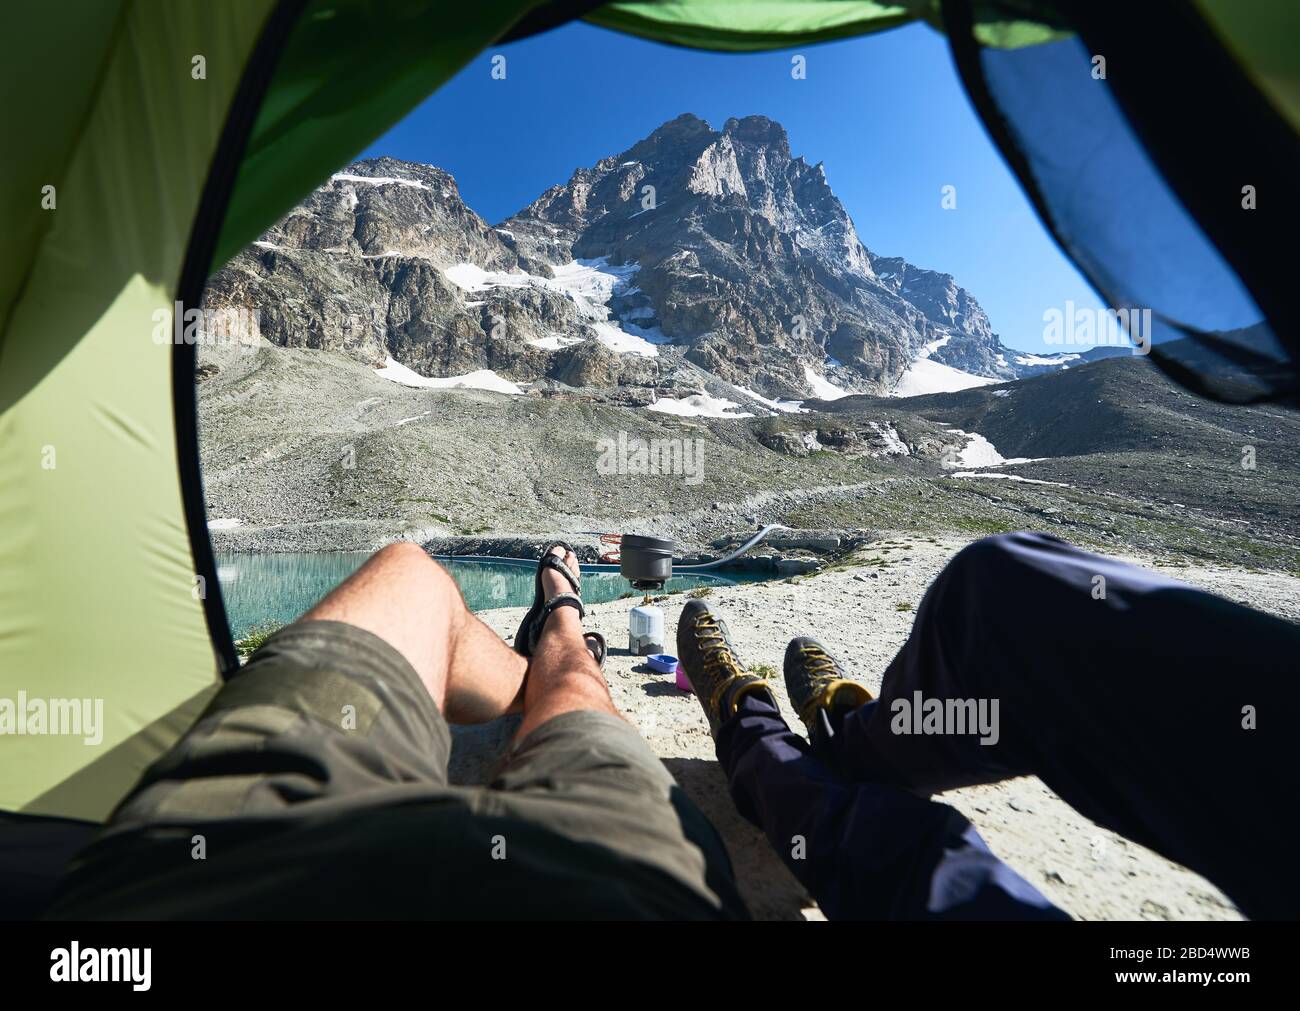 Männliche Beine im Zeltlager mit schneebedeckten Bergen im Hintergrund.  Zwei Reisende, die im Touristenzelt liegen und die Aussicht auf die schönen  felsigen Hügel der Alpen genießen. Konzept für Reisen, Wandern und Campen